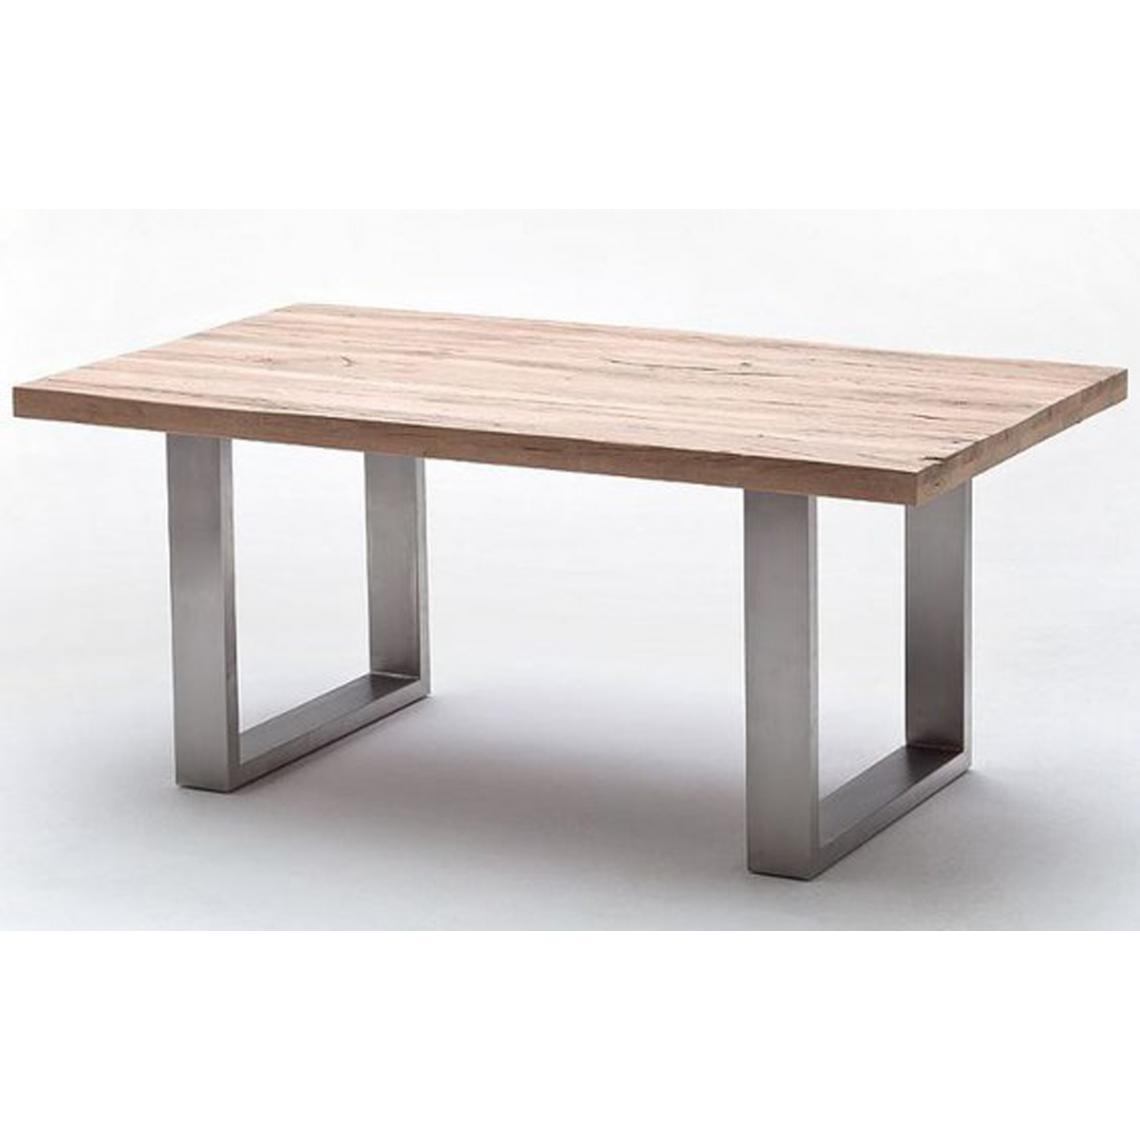 Pegane - Table à manger en chêne massif chaulé - L.200 x H.76 x P.100 cm -PEGANE- - Tables à manger